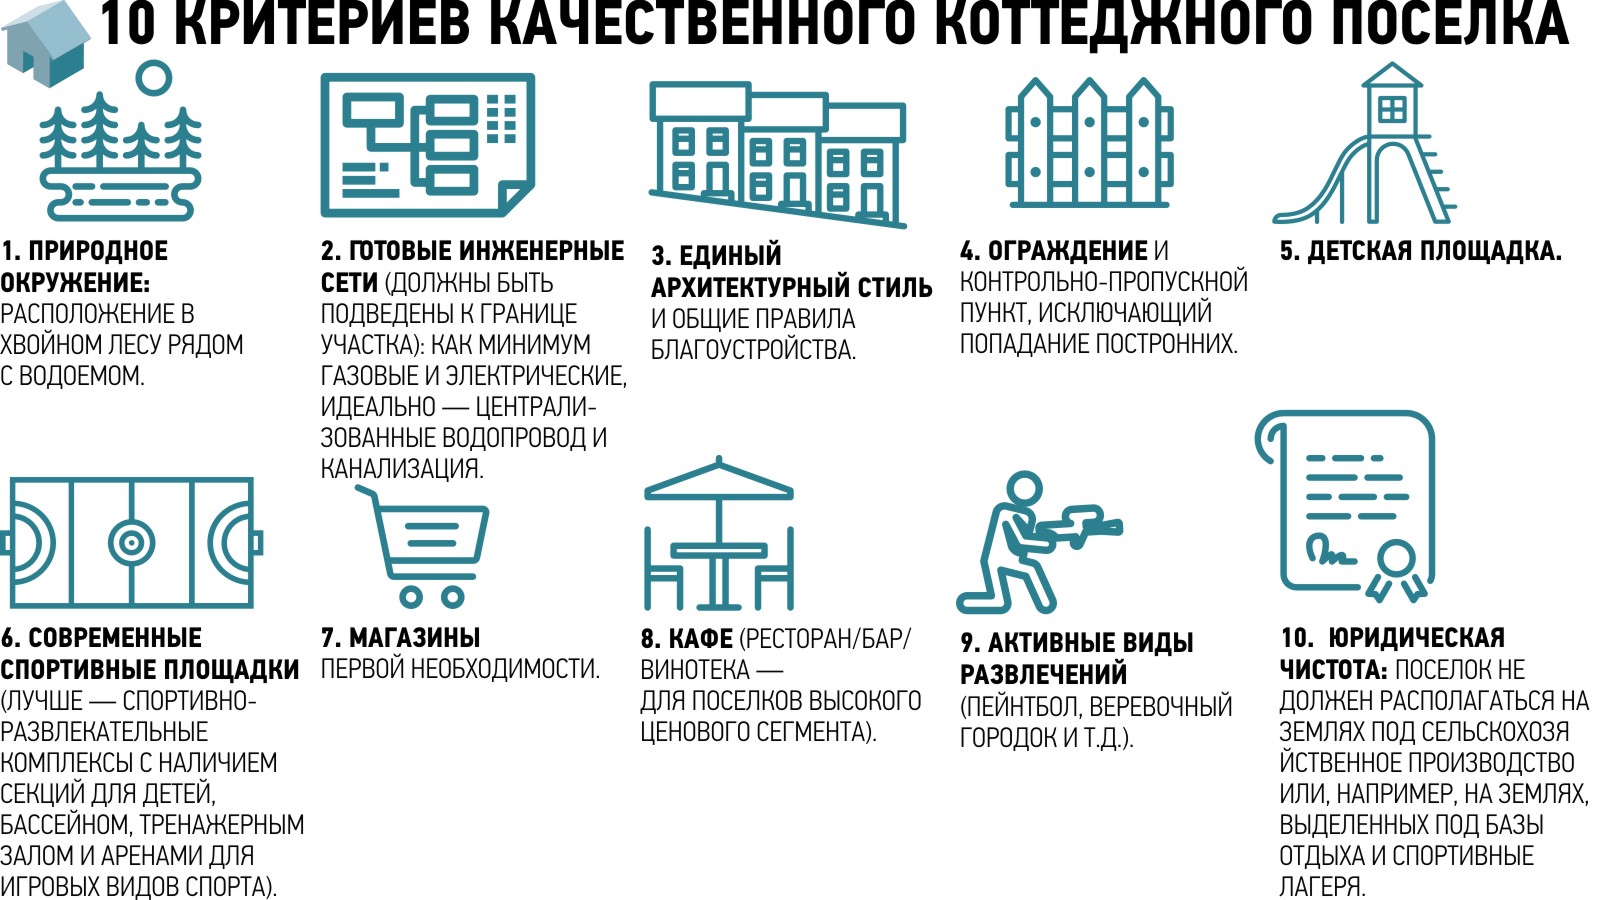 Загородная недвижимость Екатеринбурга подстраивается под новый спрос